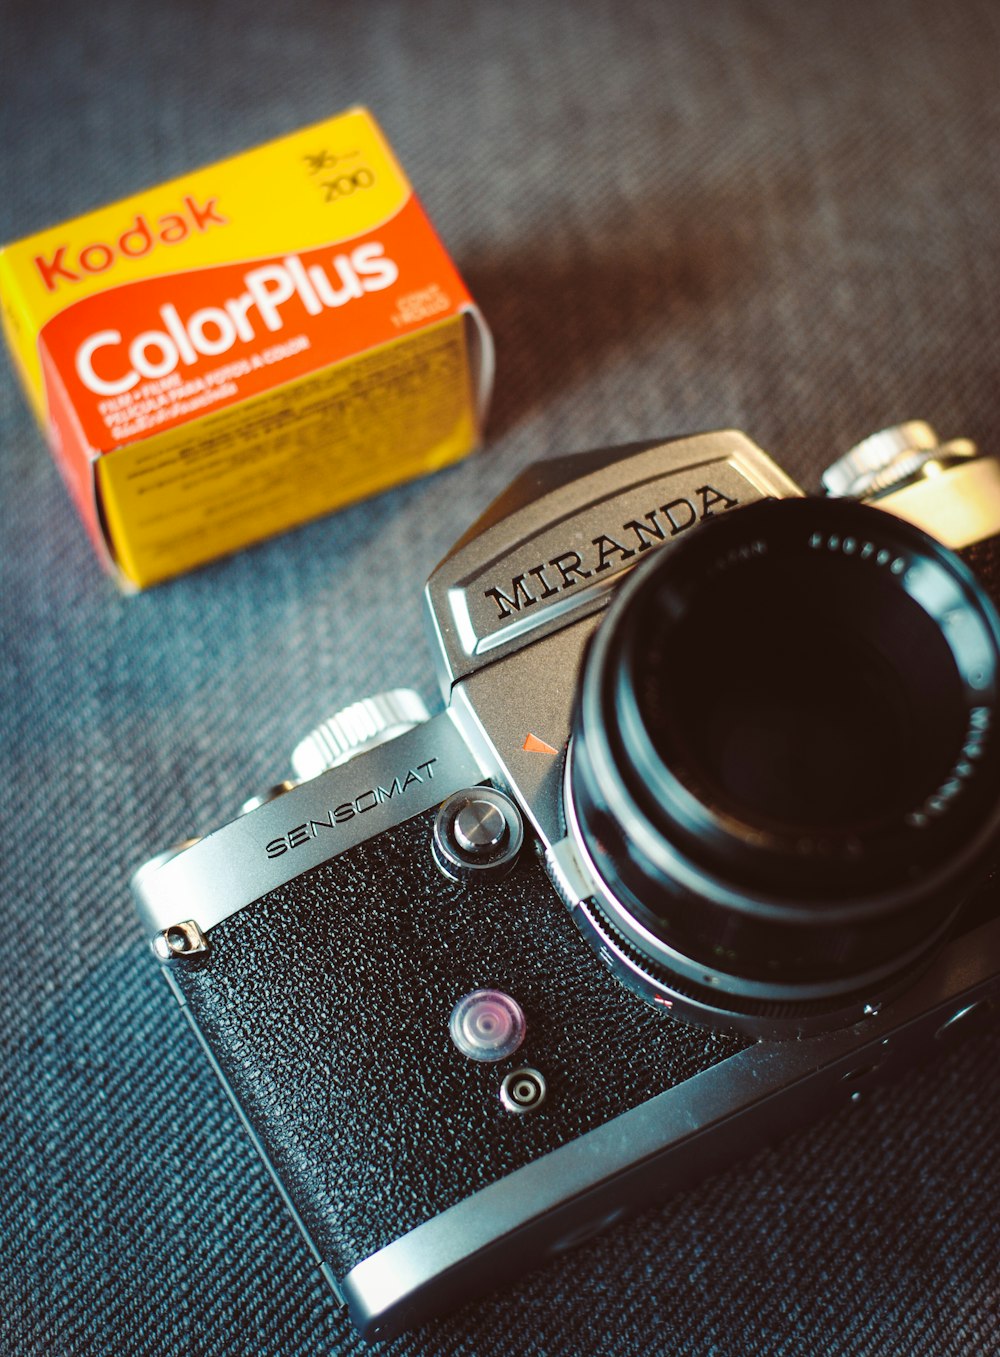 Kodak ColorPlus box and Miranda camera